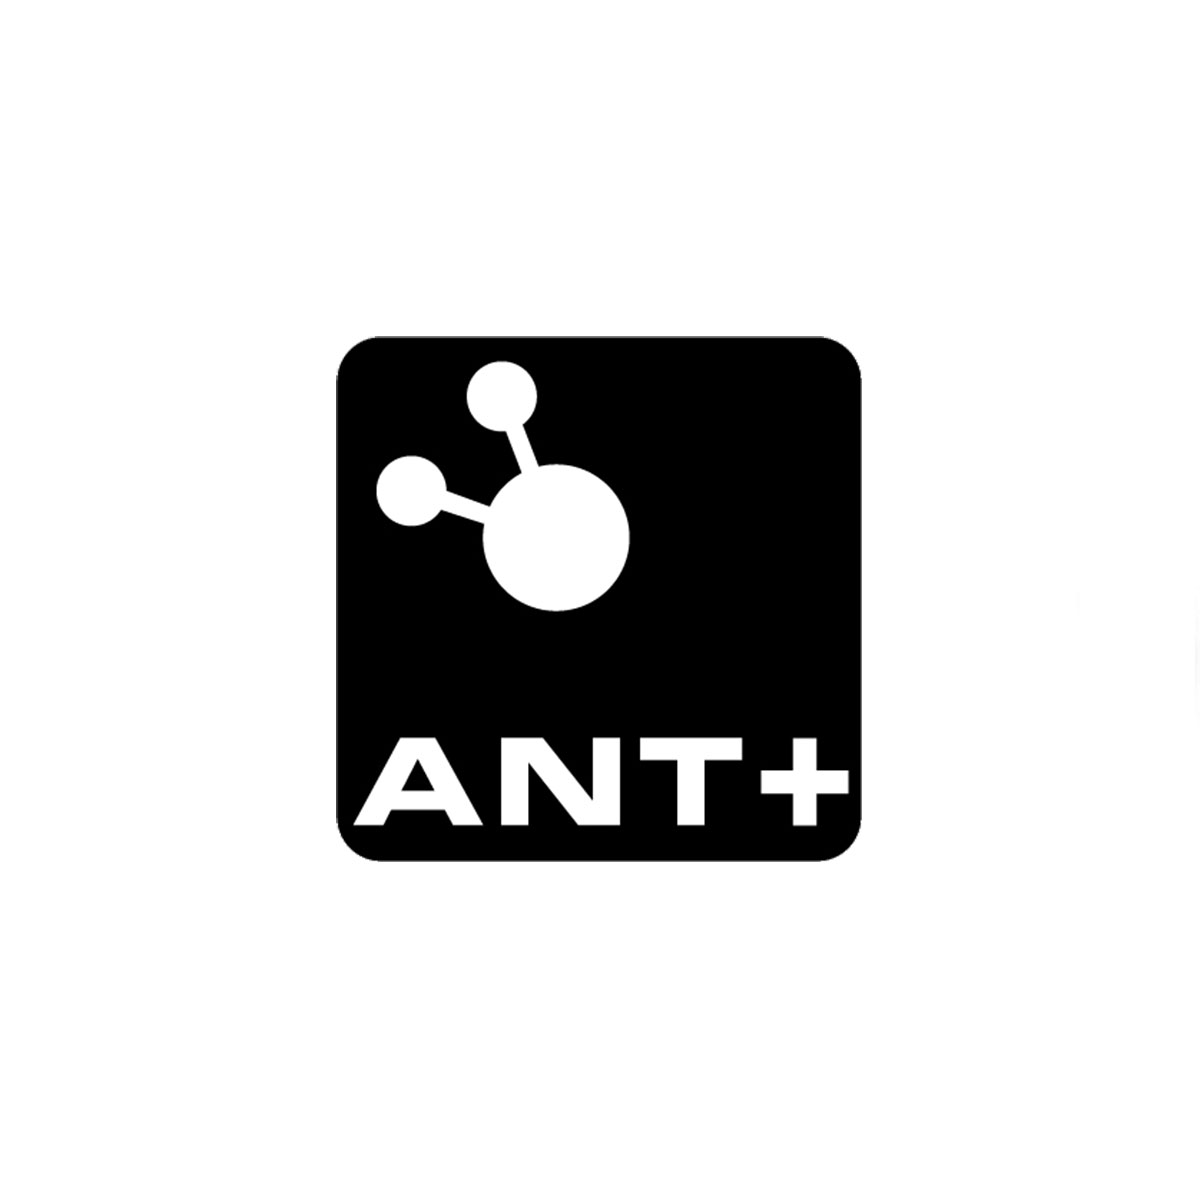 ANT+ sensors